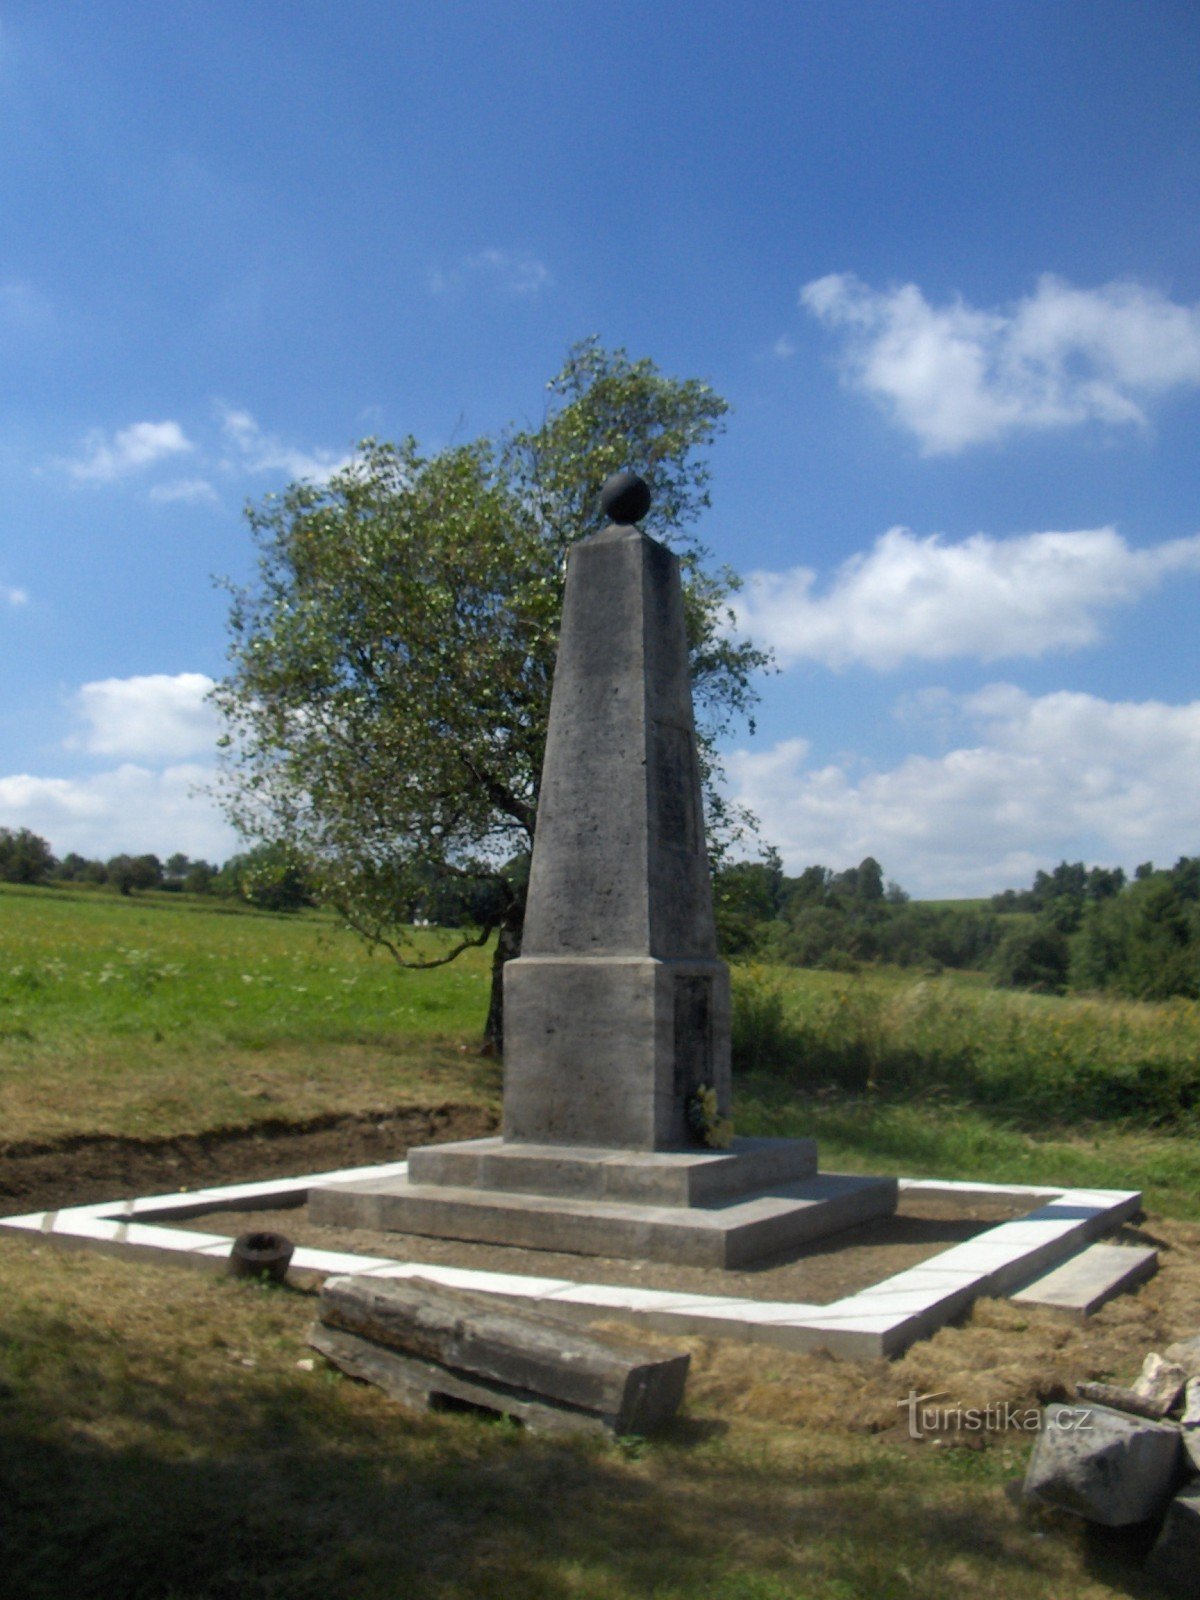 General Kleist monument